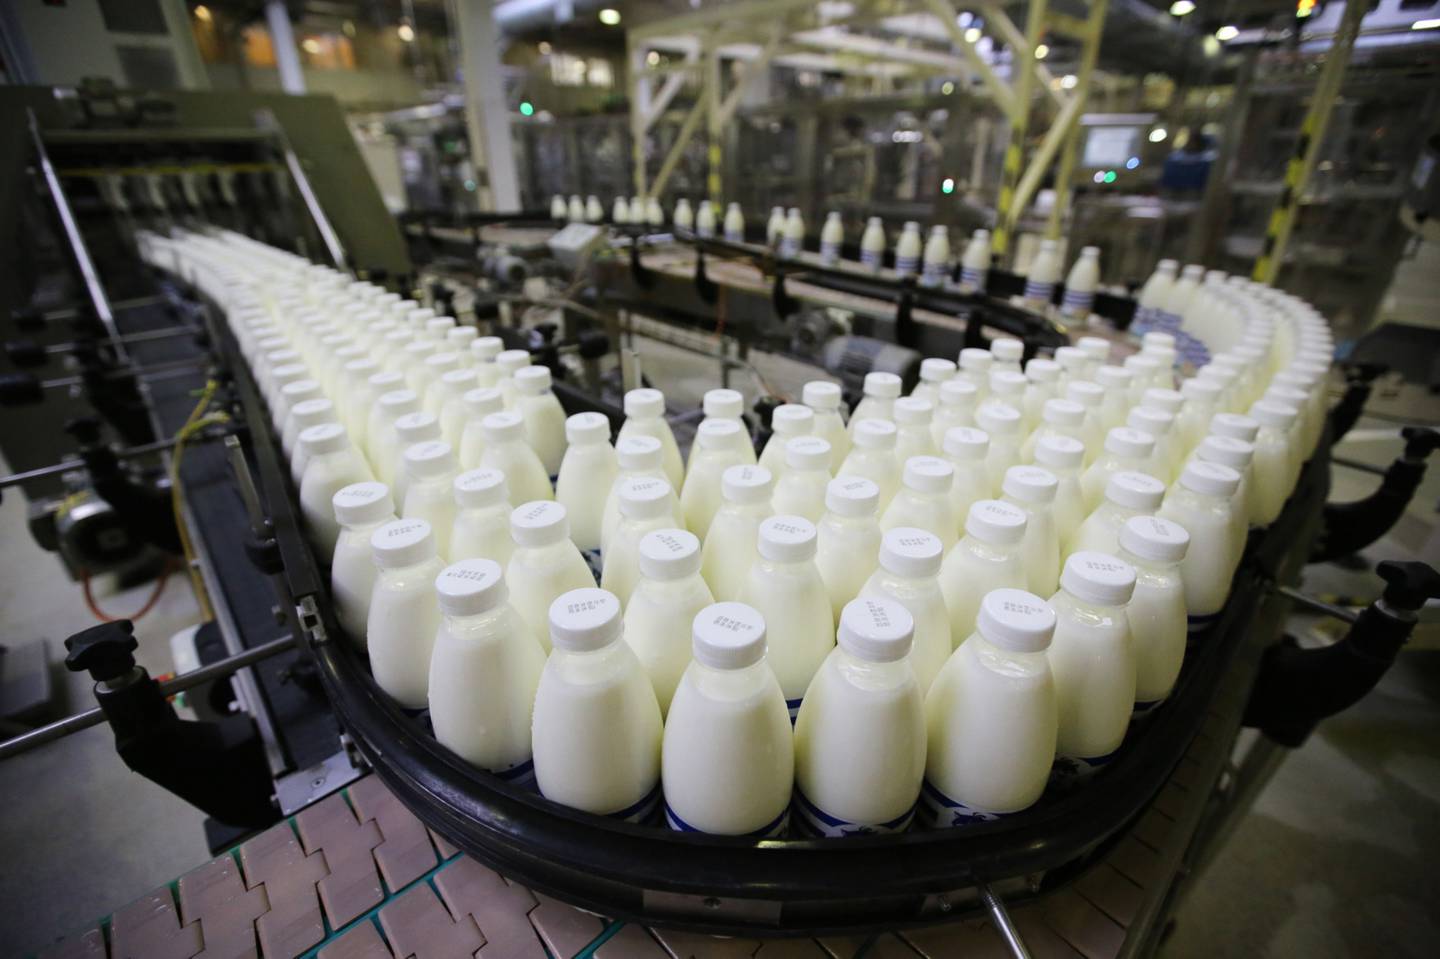 Botellas de leche pasteurizada pasan a lo largo de una cinta transportadora antes de su envasado.